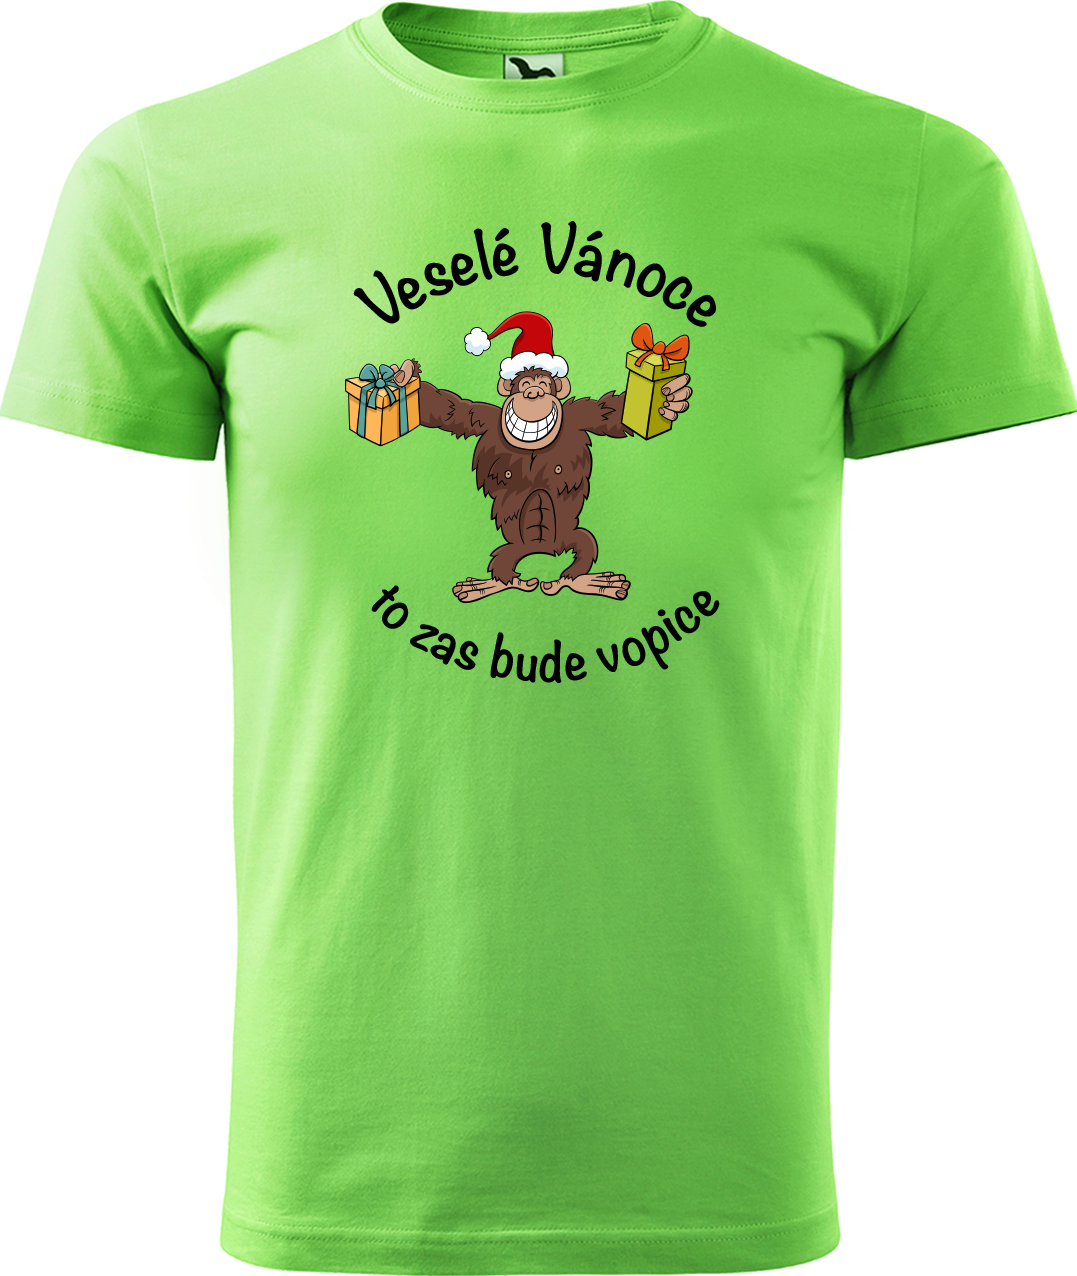 Pánské vánoční tričko - Veselé Vánoce to zas bude vopice (hnědý opičák) Velikost: S, Barva: Apple Green (92)